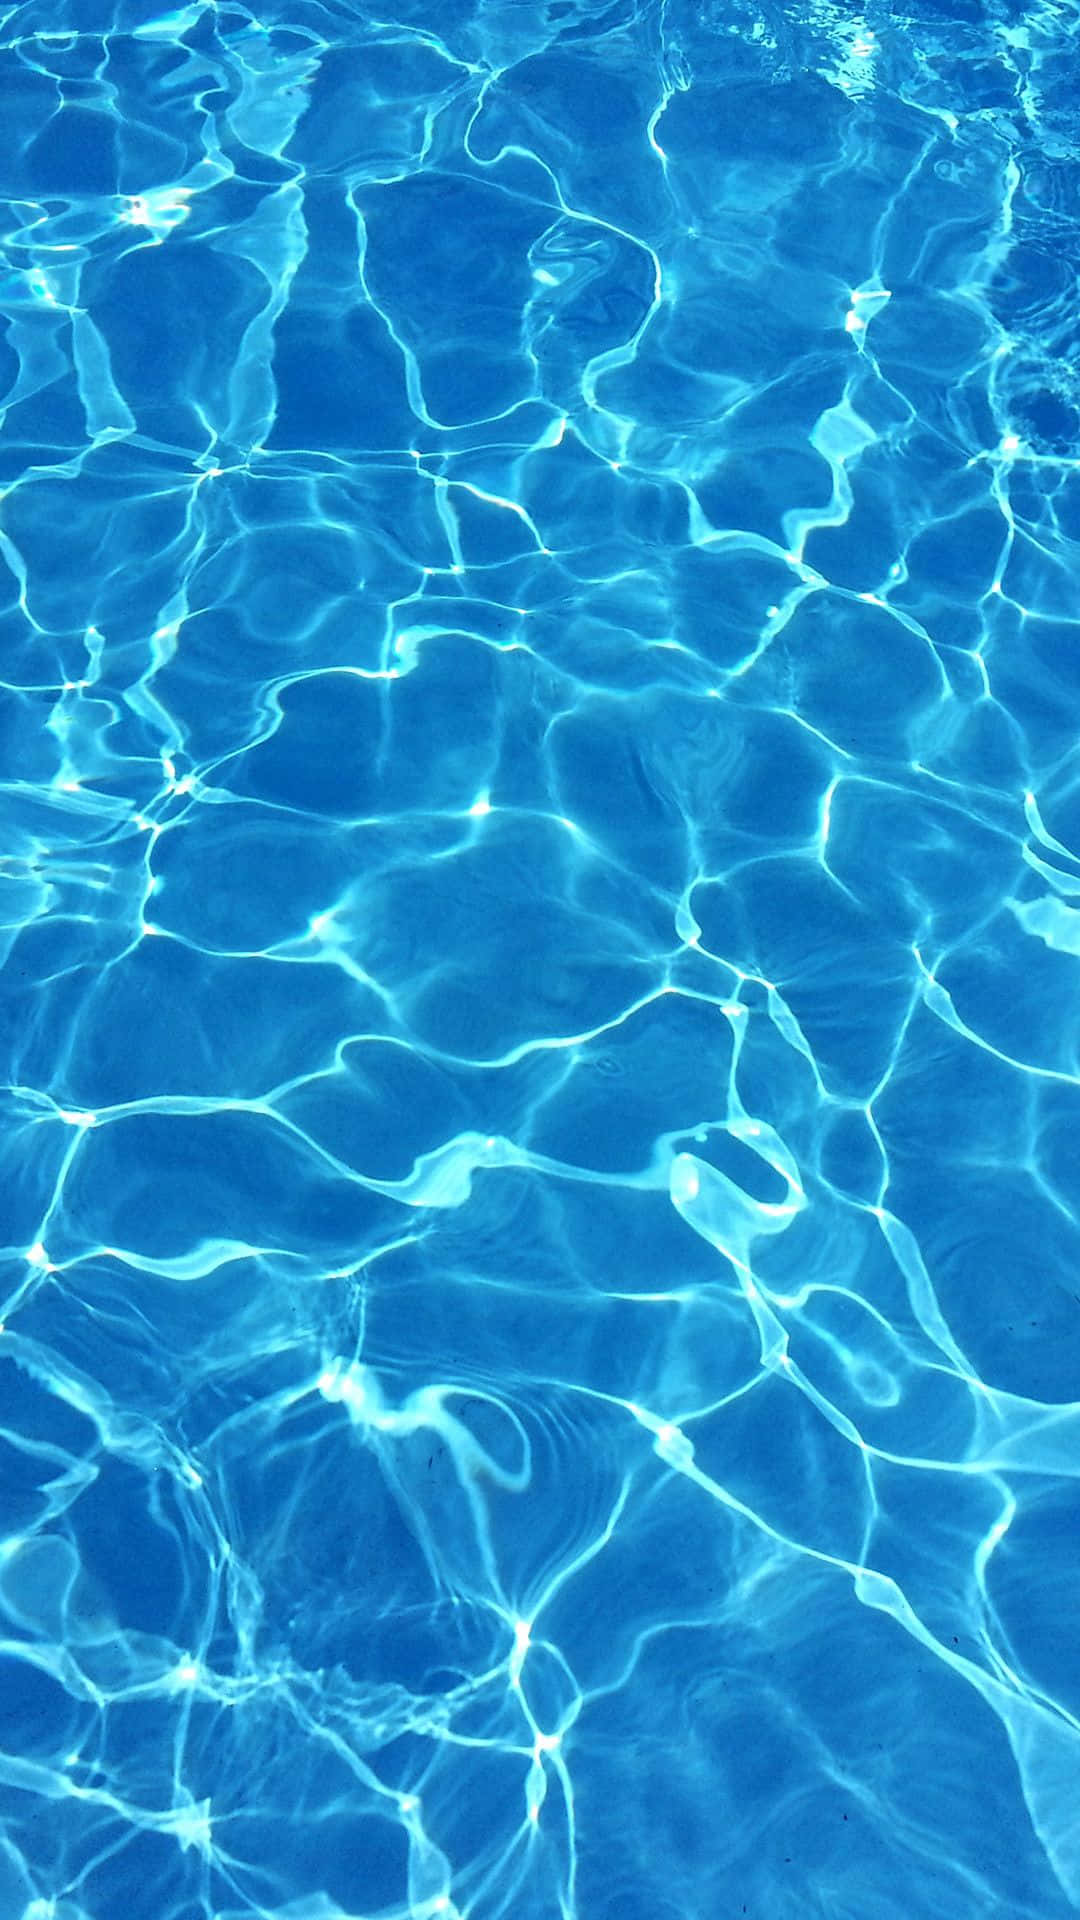 Deep Blue Pool Water Wallpaper